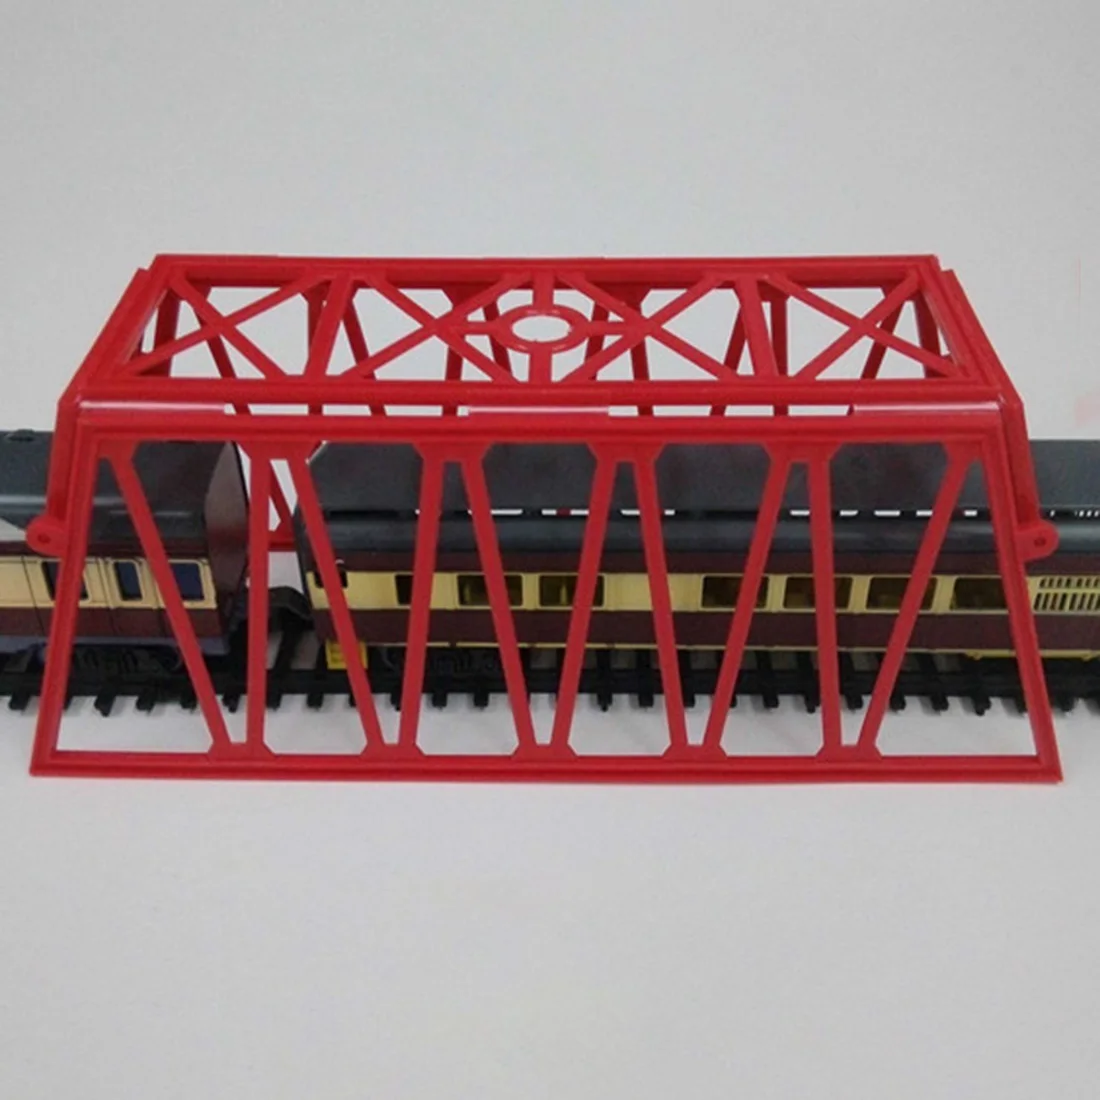 1: 87 HO Масштаб железнодорожная сцена украшения мост сеть модель для песка настольные Строительные Модели Строительные наборы)-красный